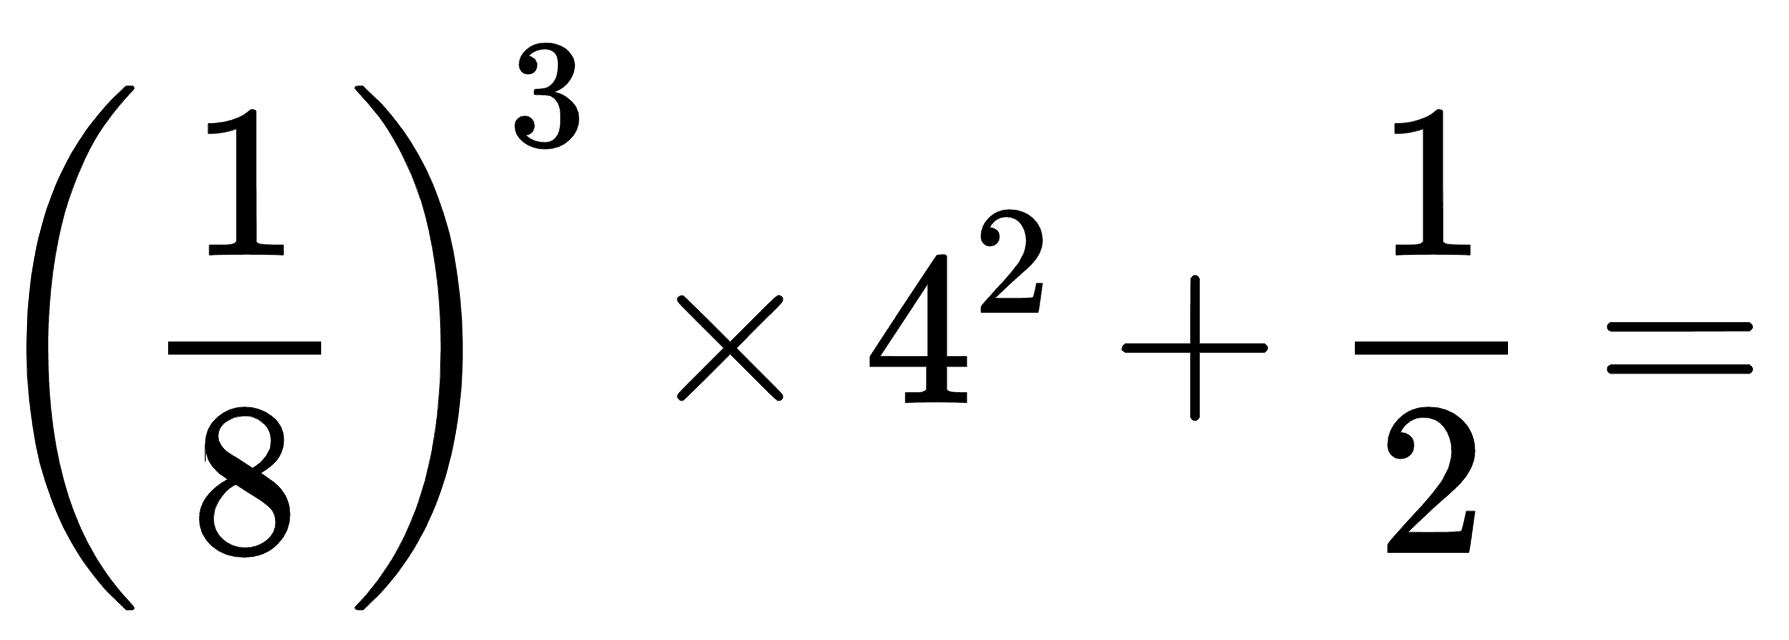 ((1)/(8))^(3) x 4^(2)+(1)/(2)=